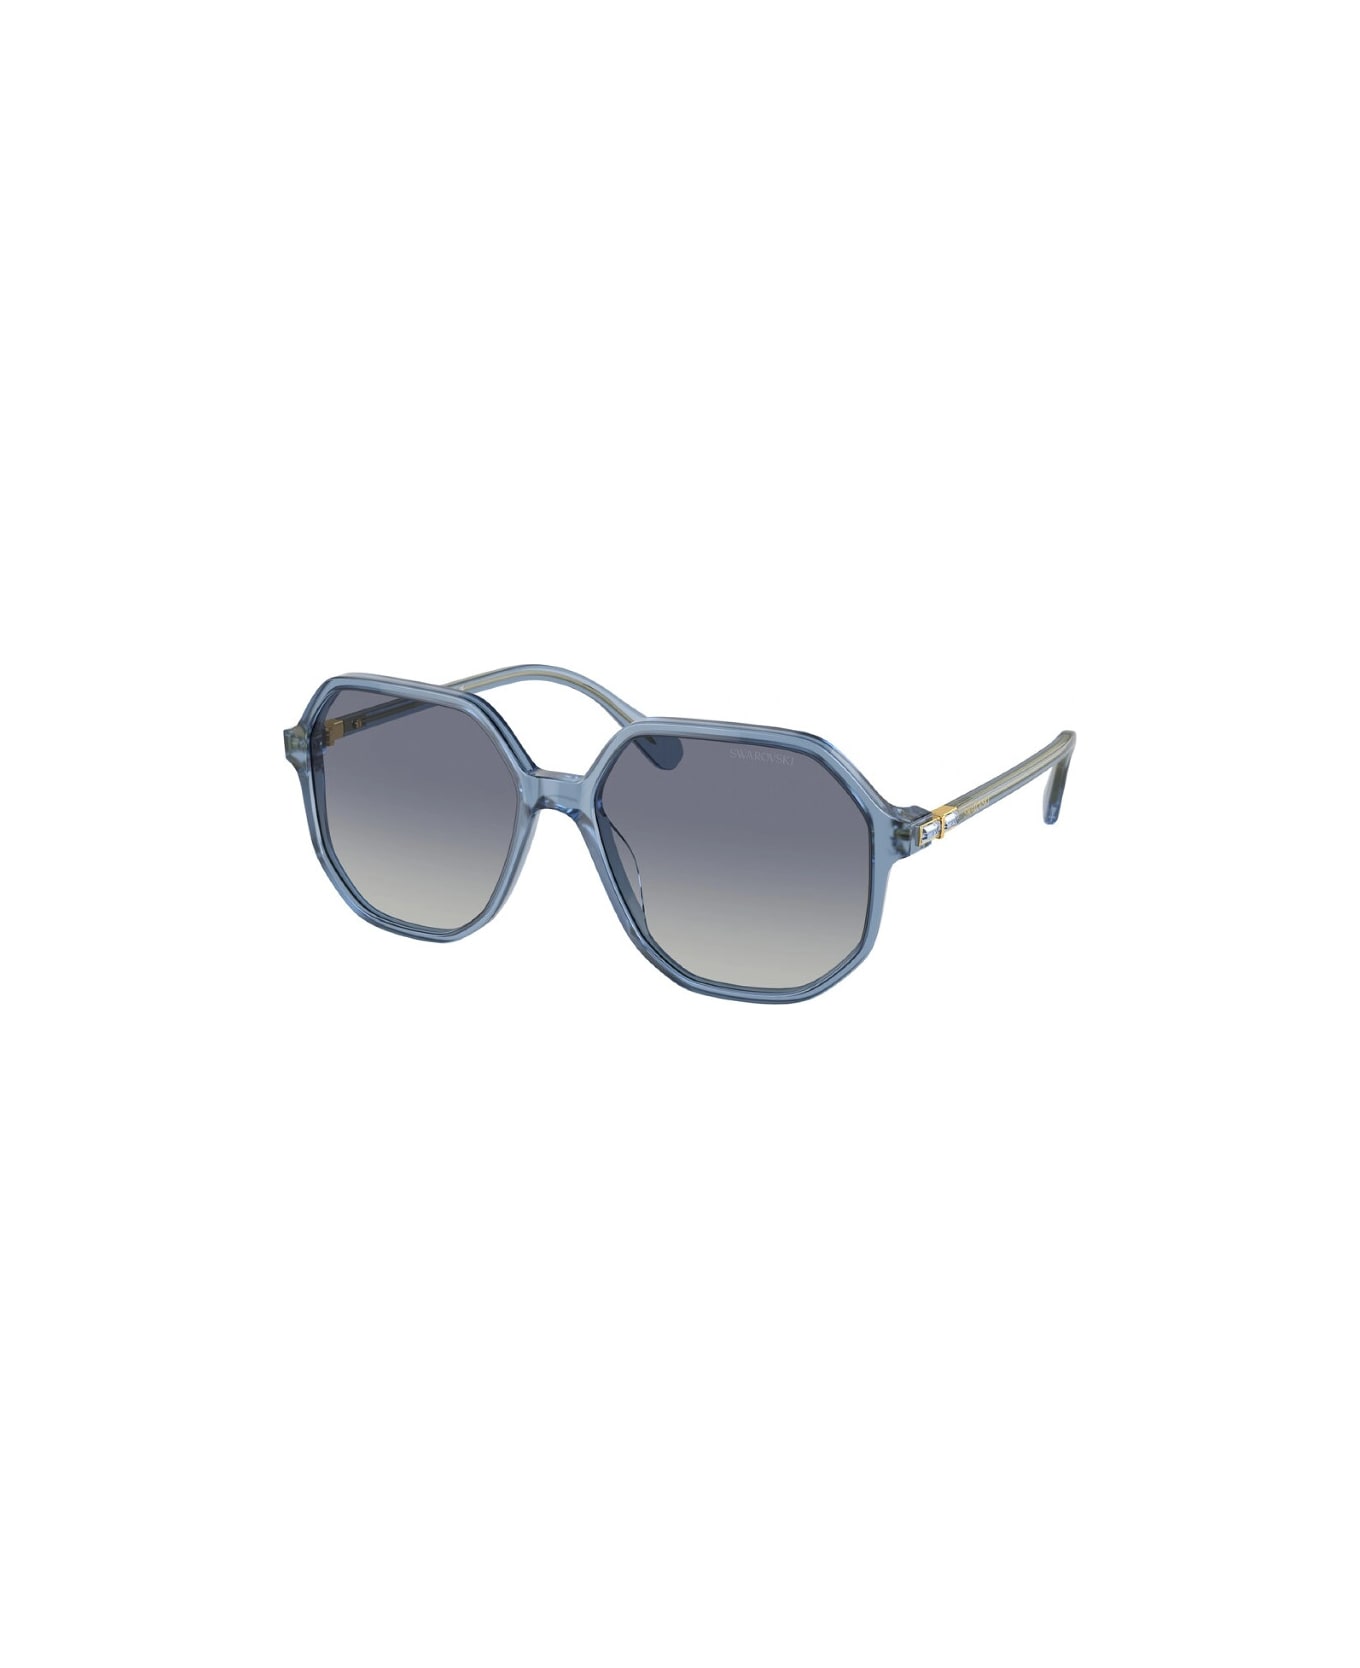 Swarovski SK6003 10354l Sunglasses - Azzurro サングラス